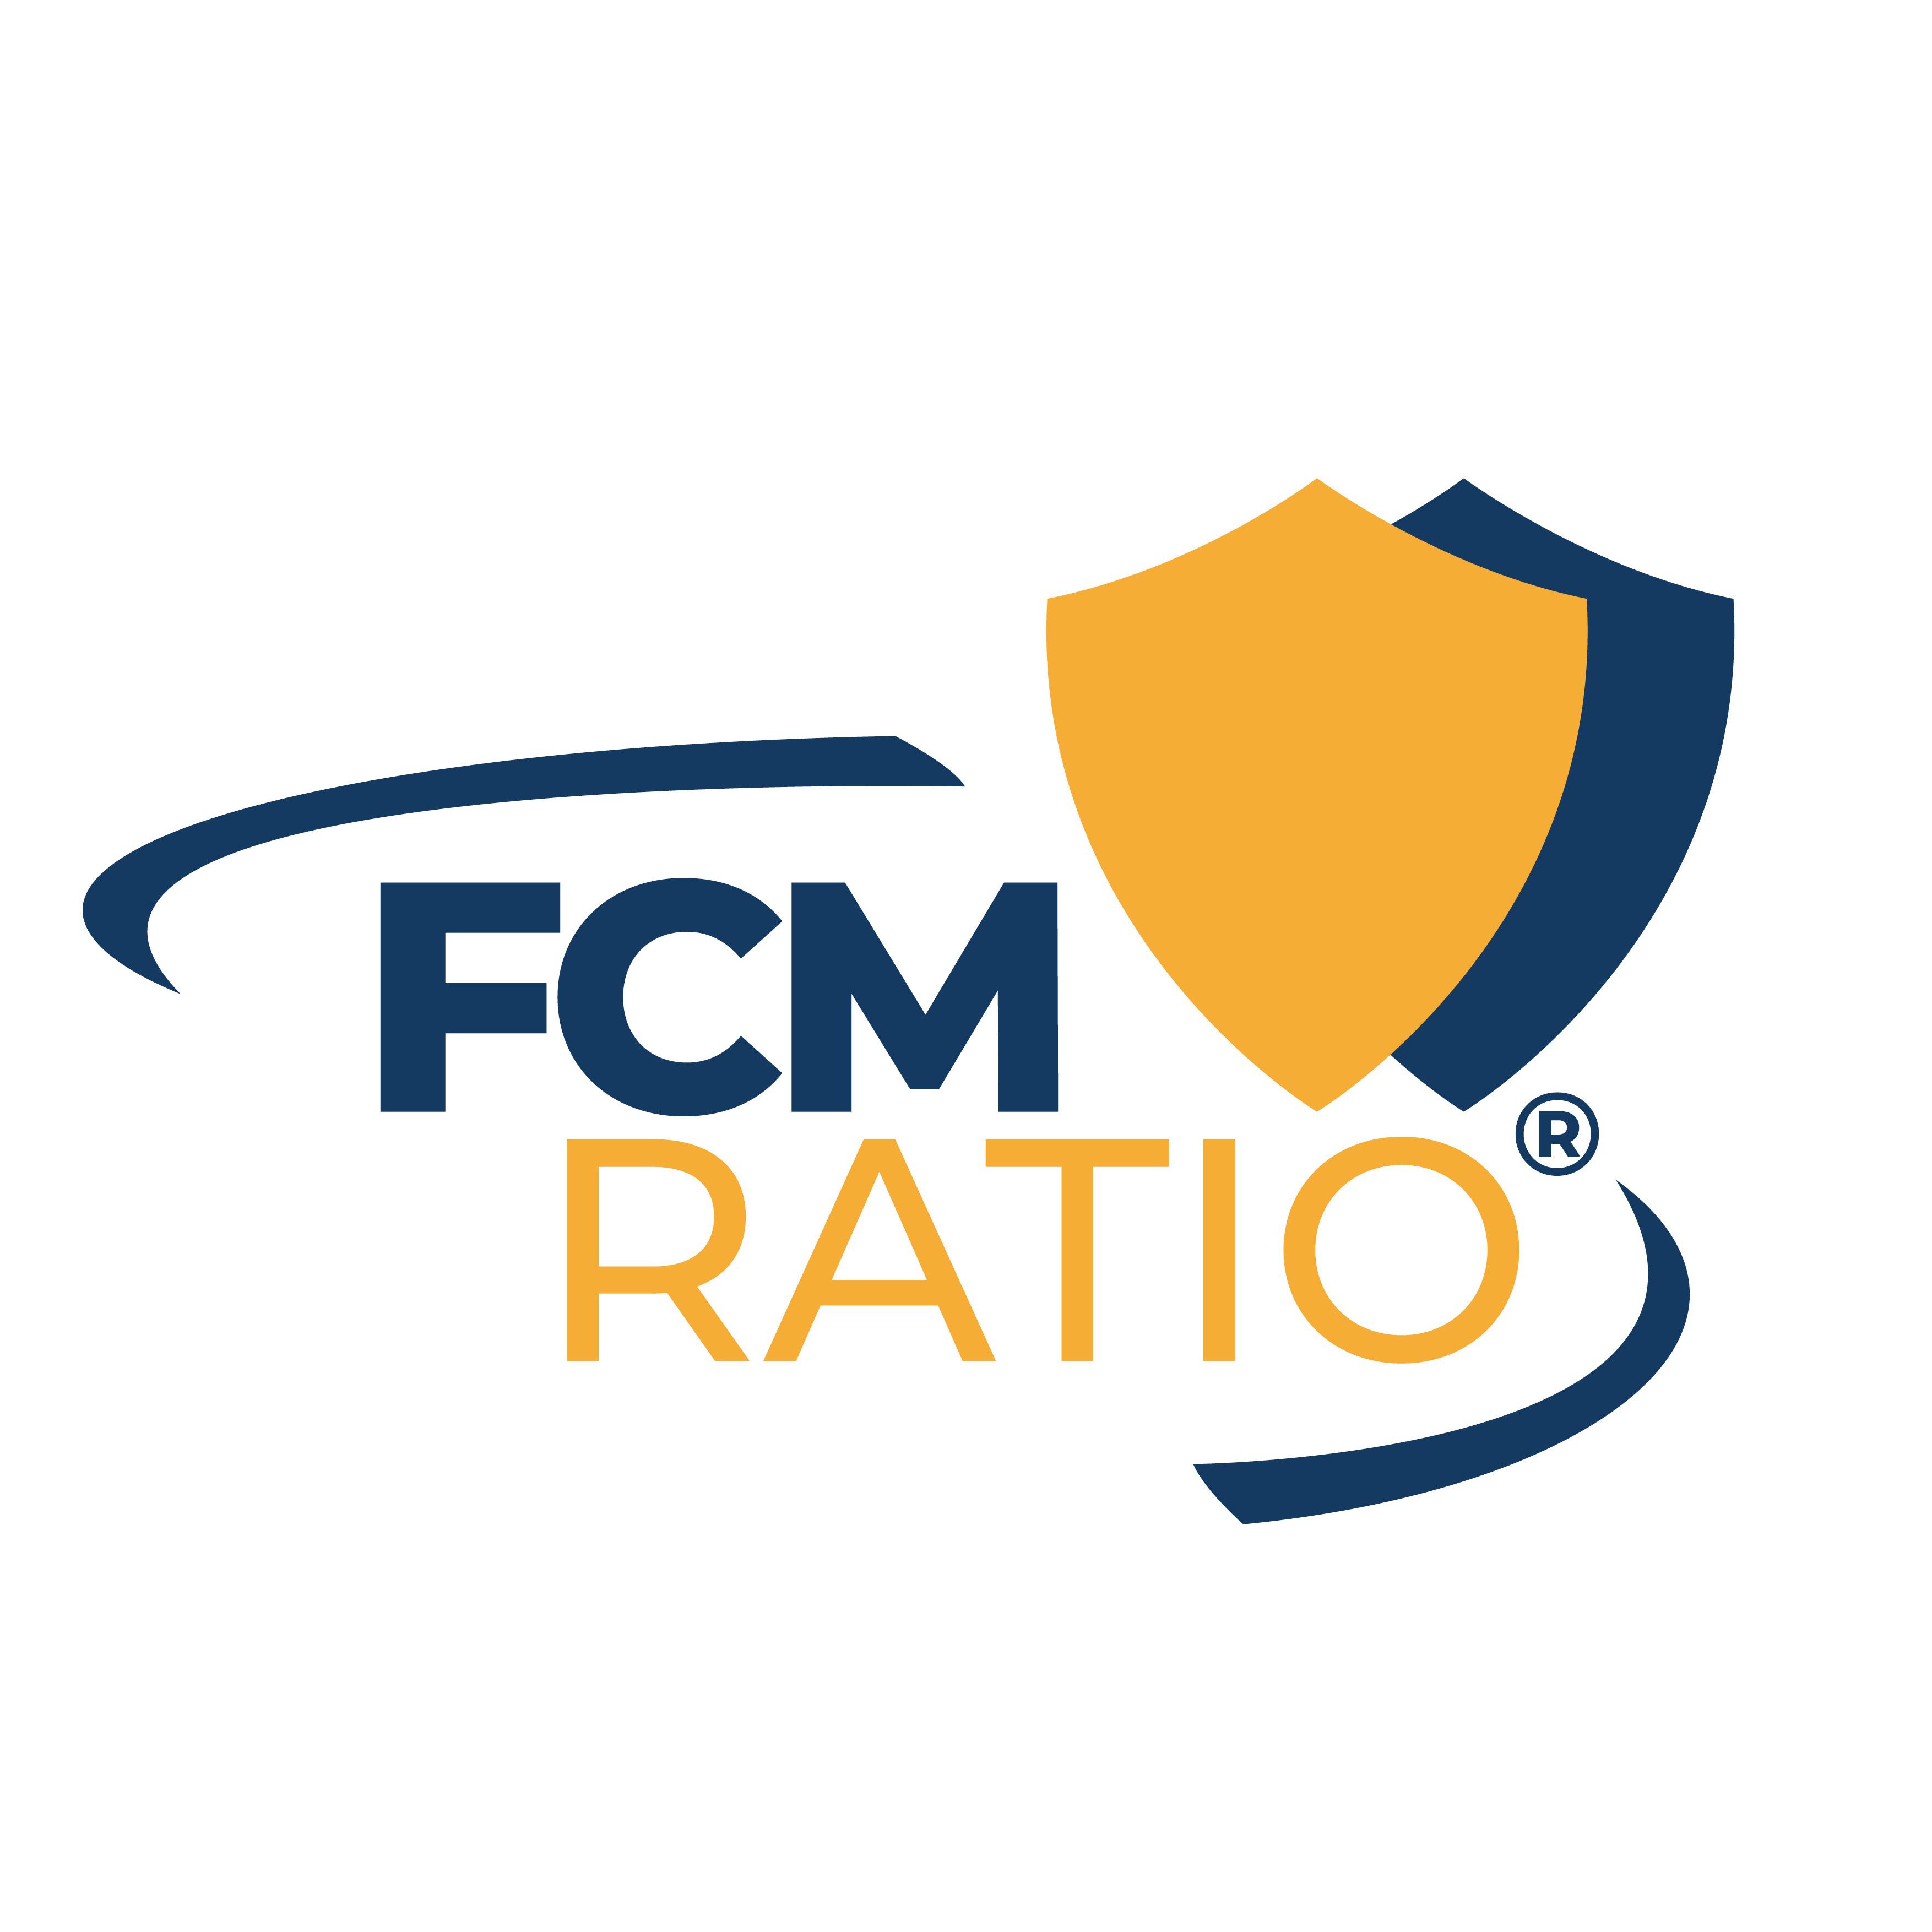 FCM Ratio Logo